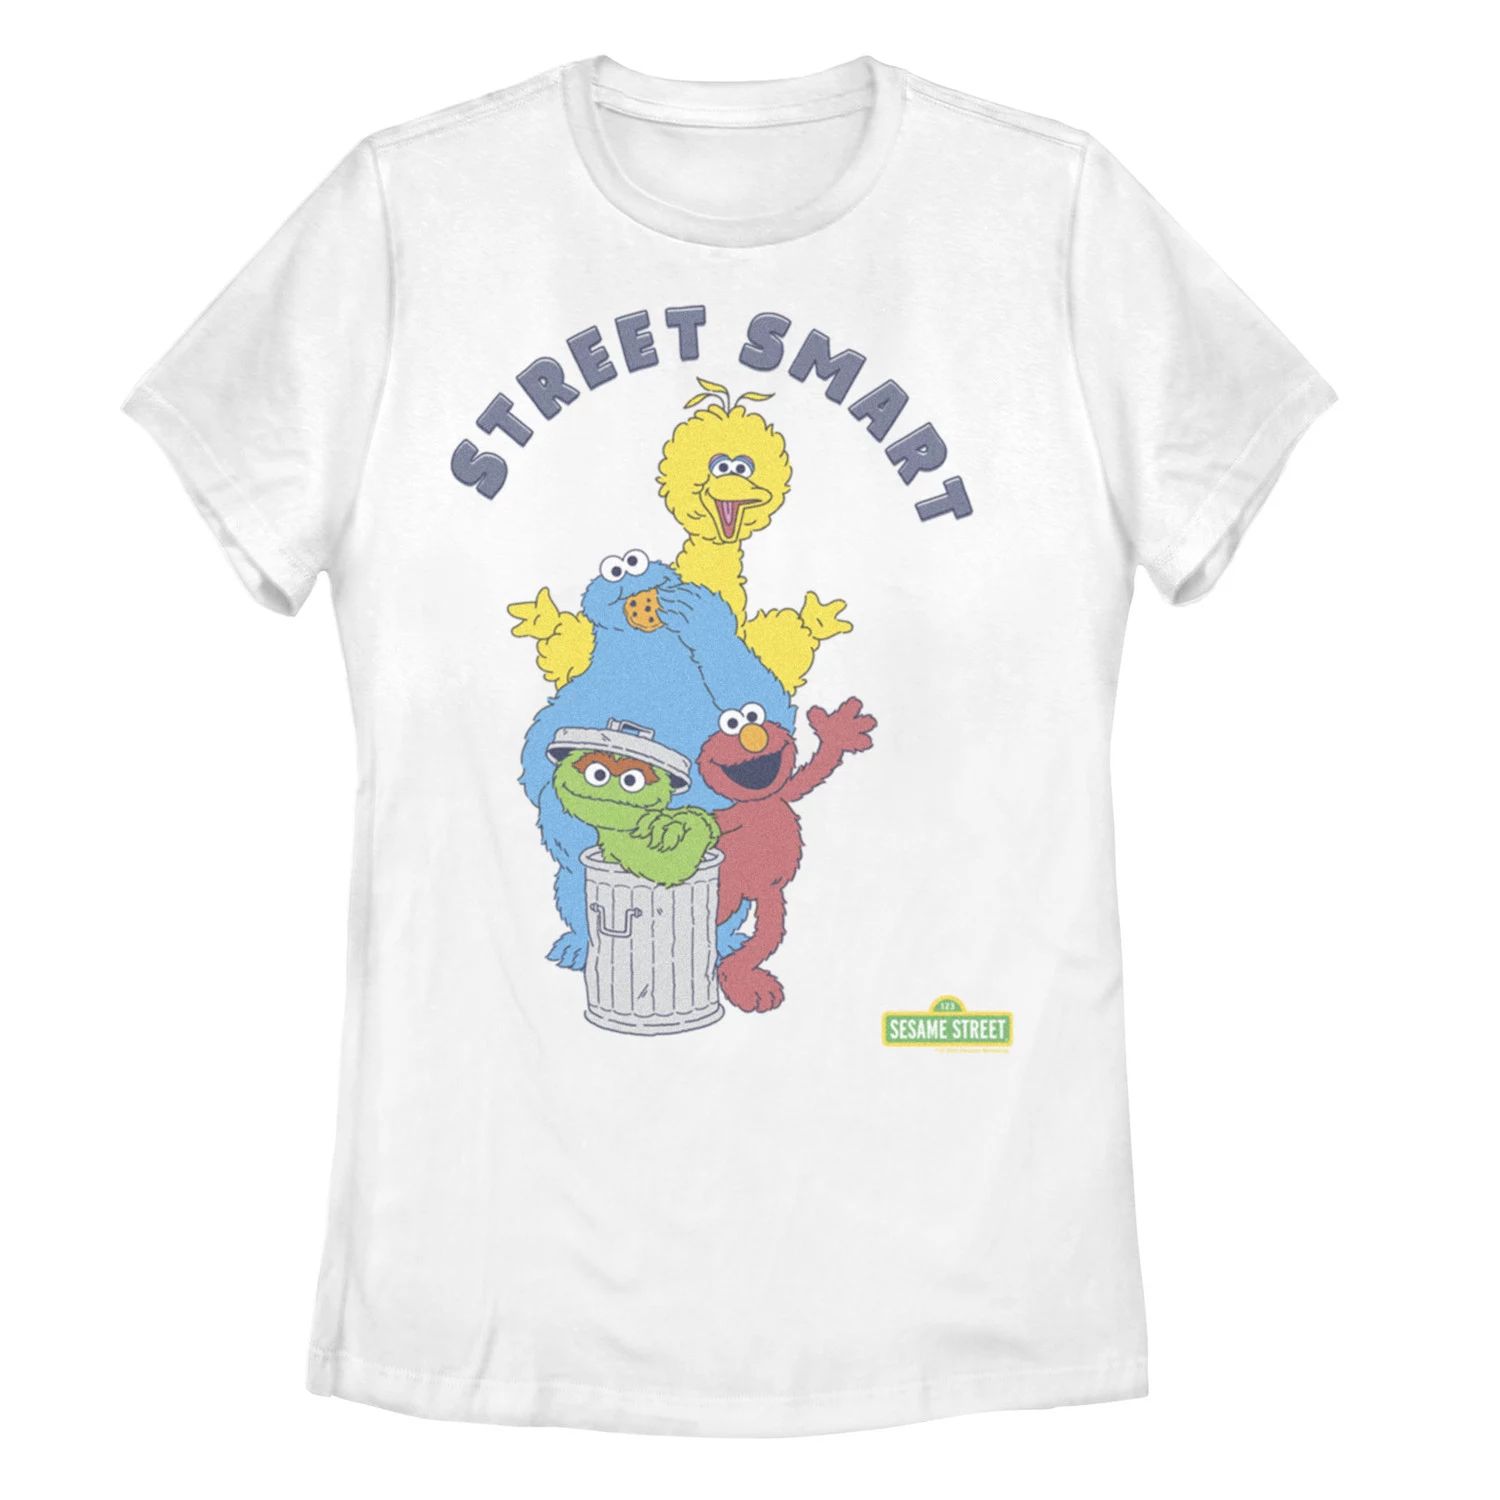 Детская футболка с графическим рисунком «Улица Сезам Улица Улица Сезам» Licensed Character суперраскраска 0701 улица сезам